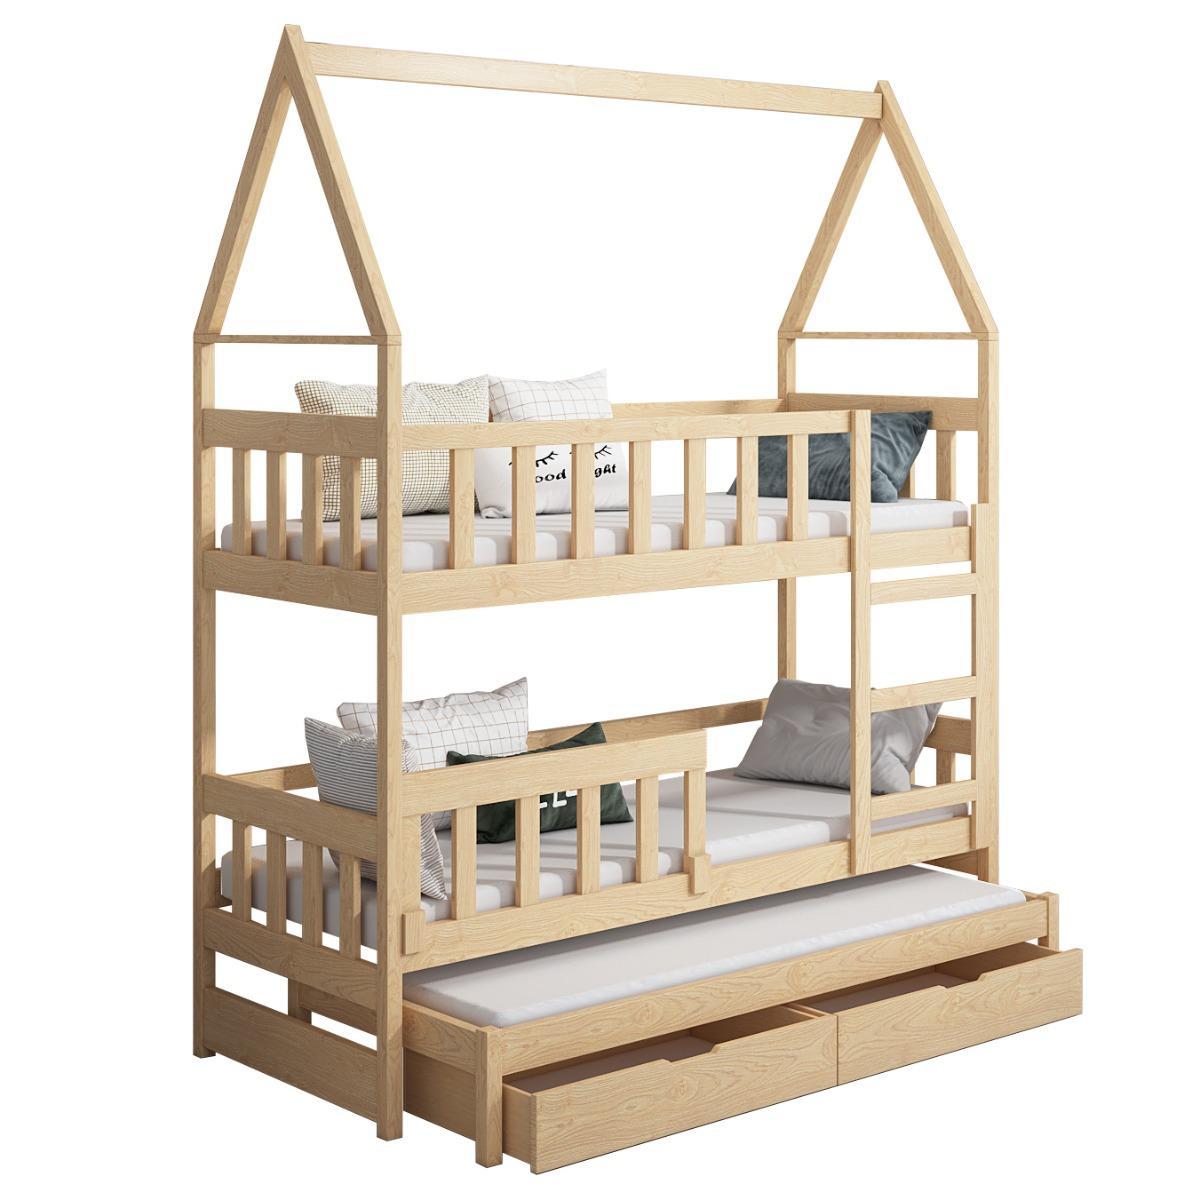 Łóżko piętrowe DOMEK drewno białe miejsce do spania dla 3 osób + materace lateksowe 180x75 cm + barierka dolna do pokoju dziecka 5 Full Screen